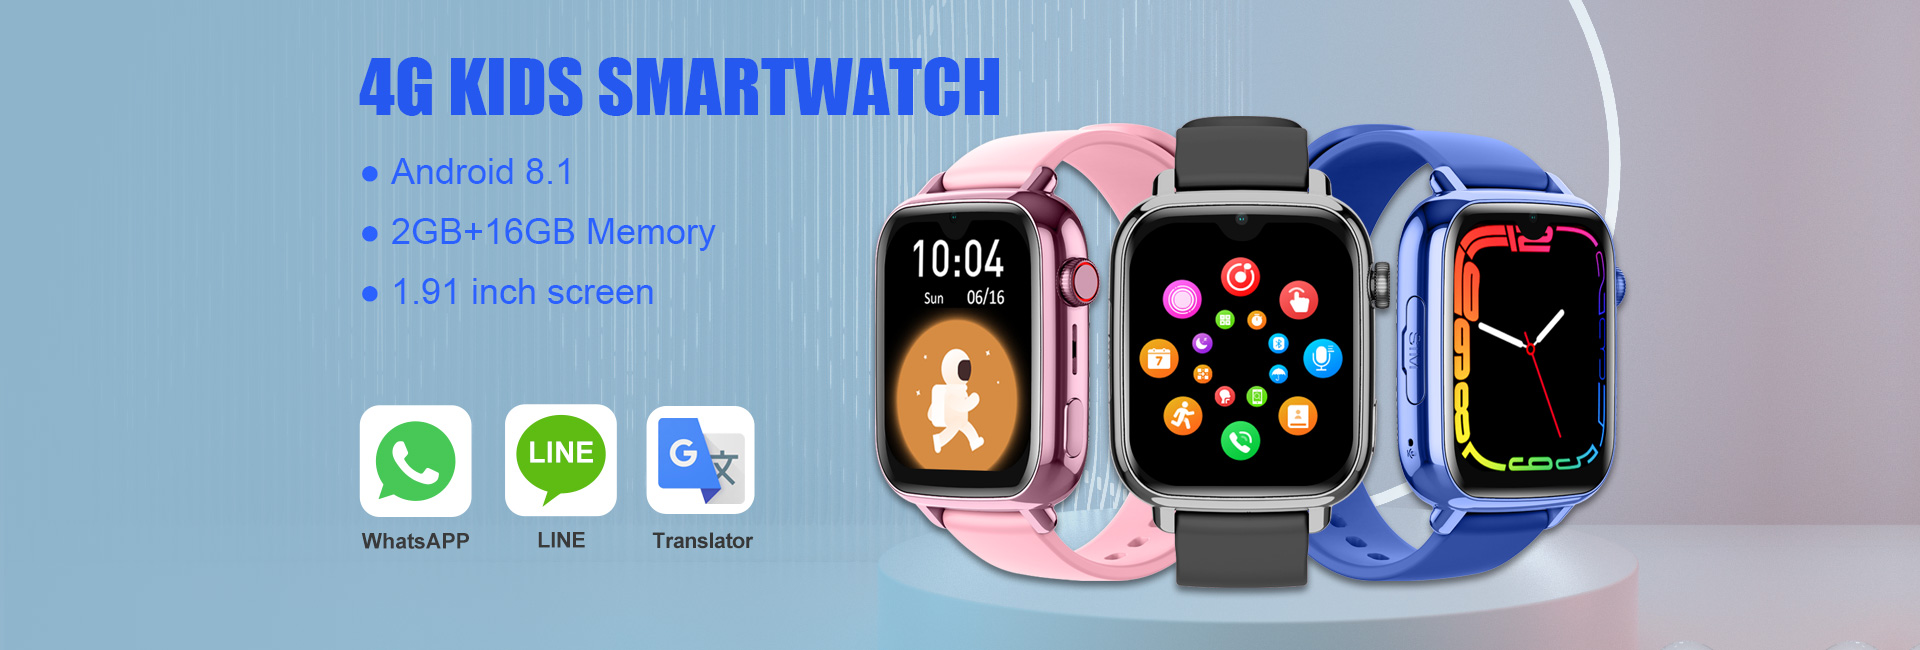 4G Kids Smartwatch